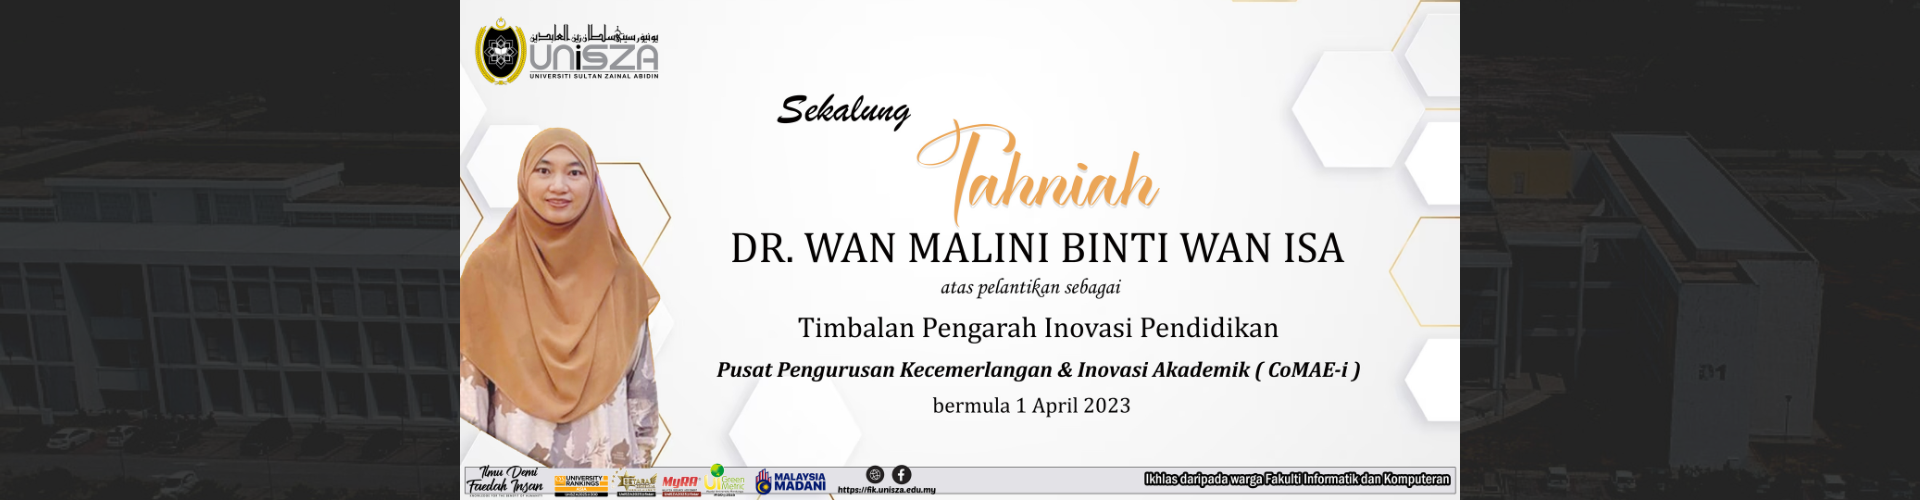 Dr wan malini